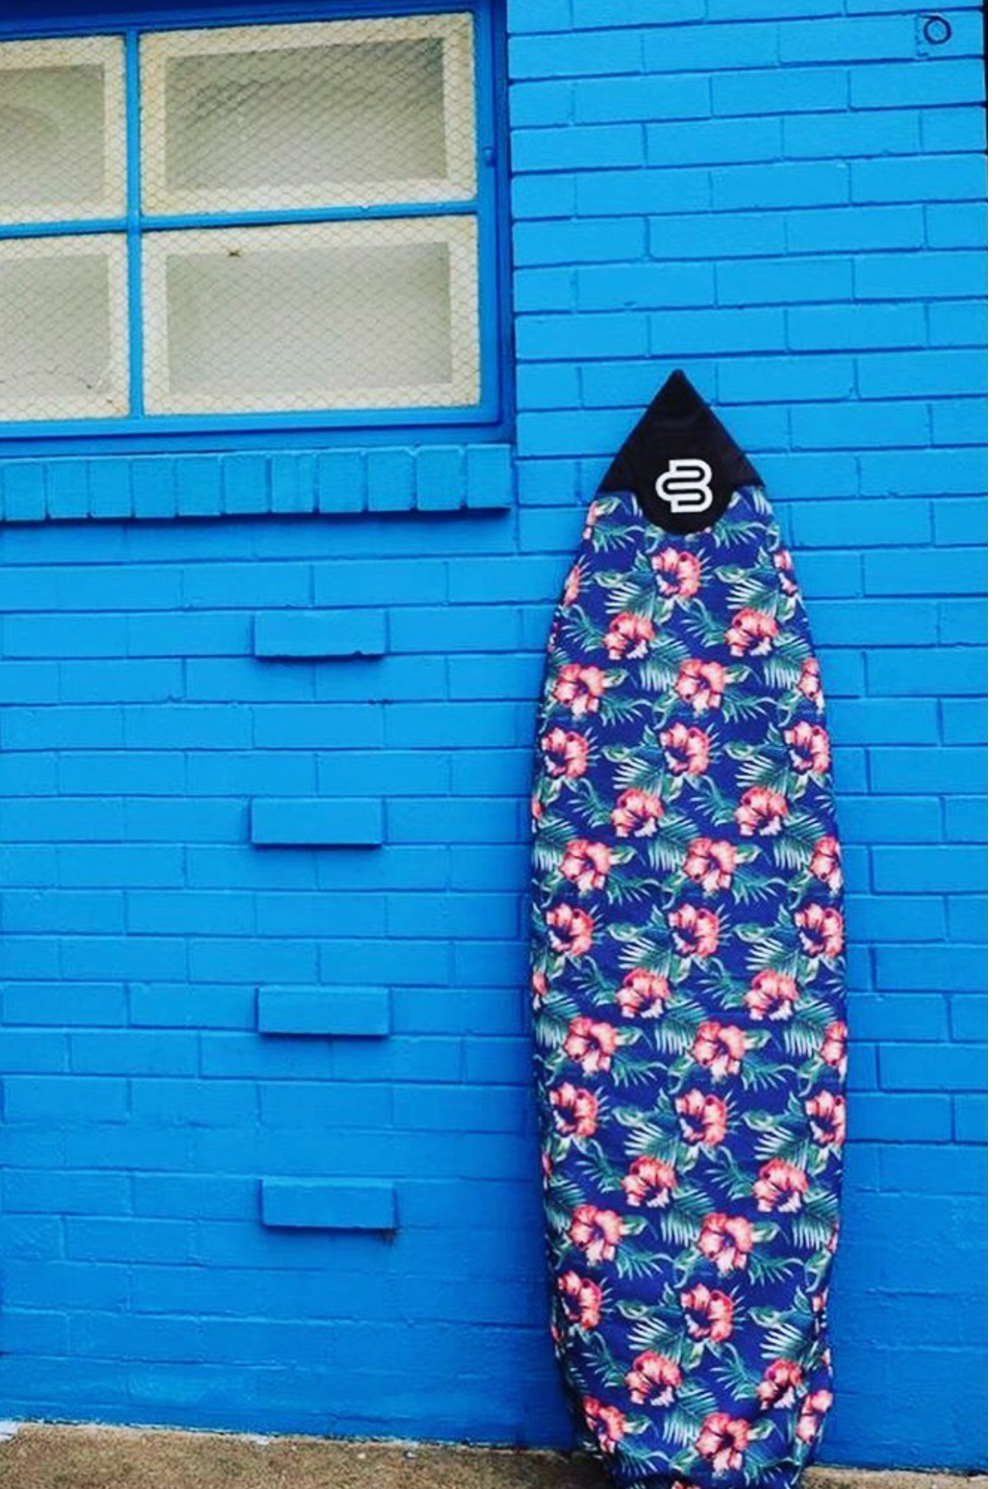 Hawaiian  Shortboard Surfboard Cover